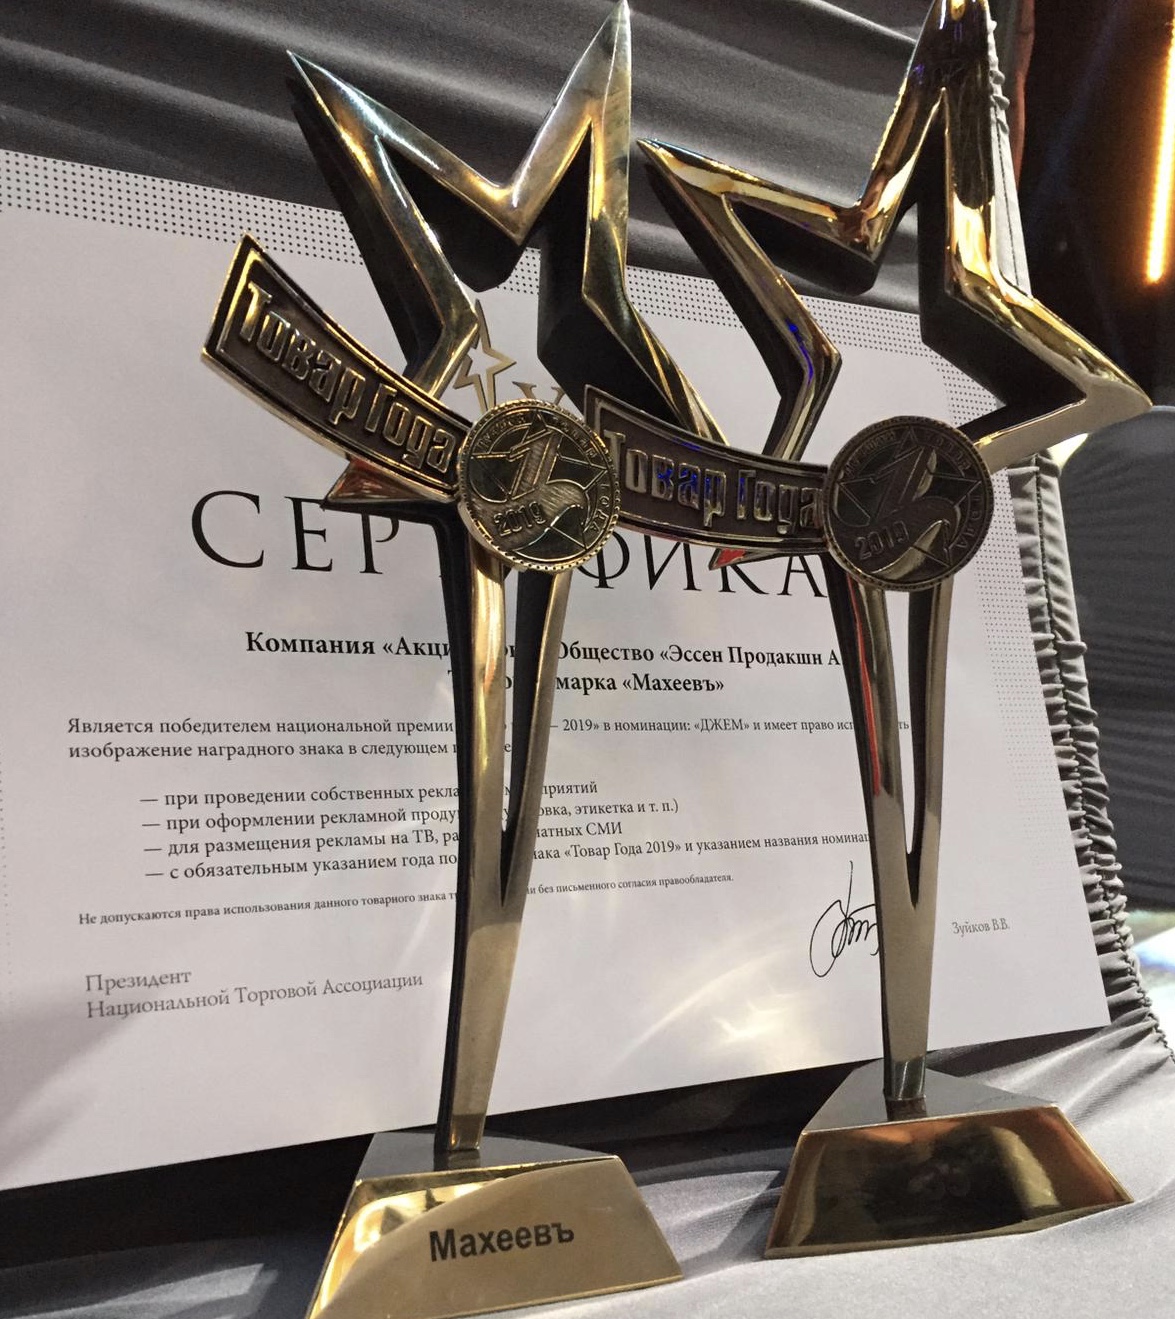 Единственная компания из Татарстана получила премию «Товар года»